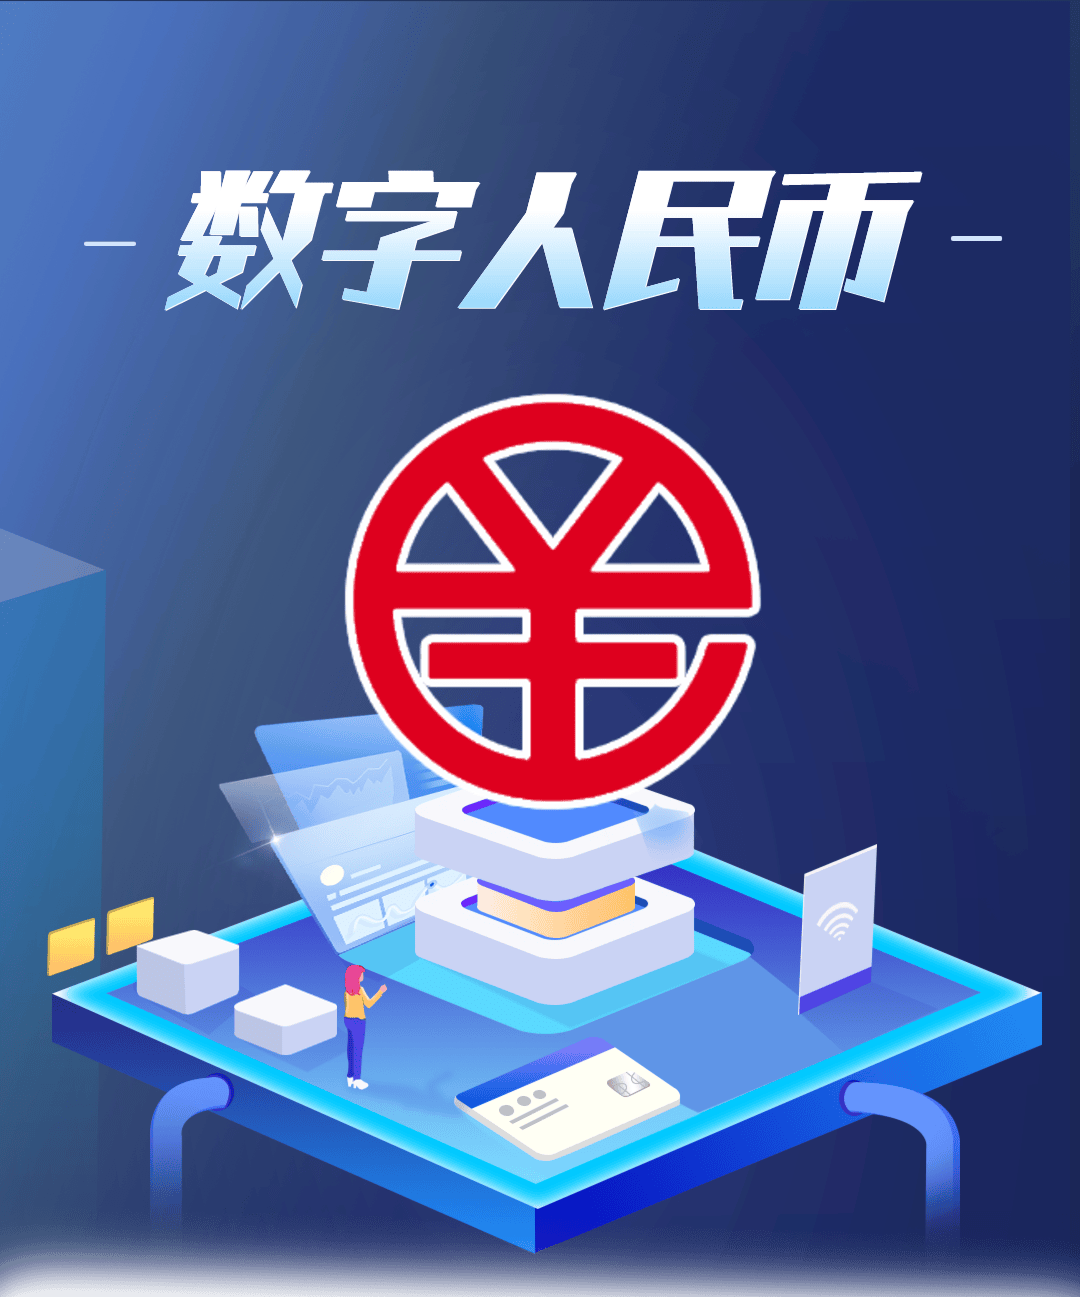 数字人民币app,是中国法定数字货币——数字人民币面向个人用户开展